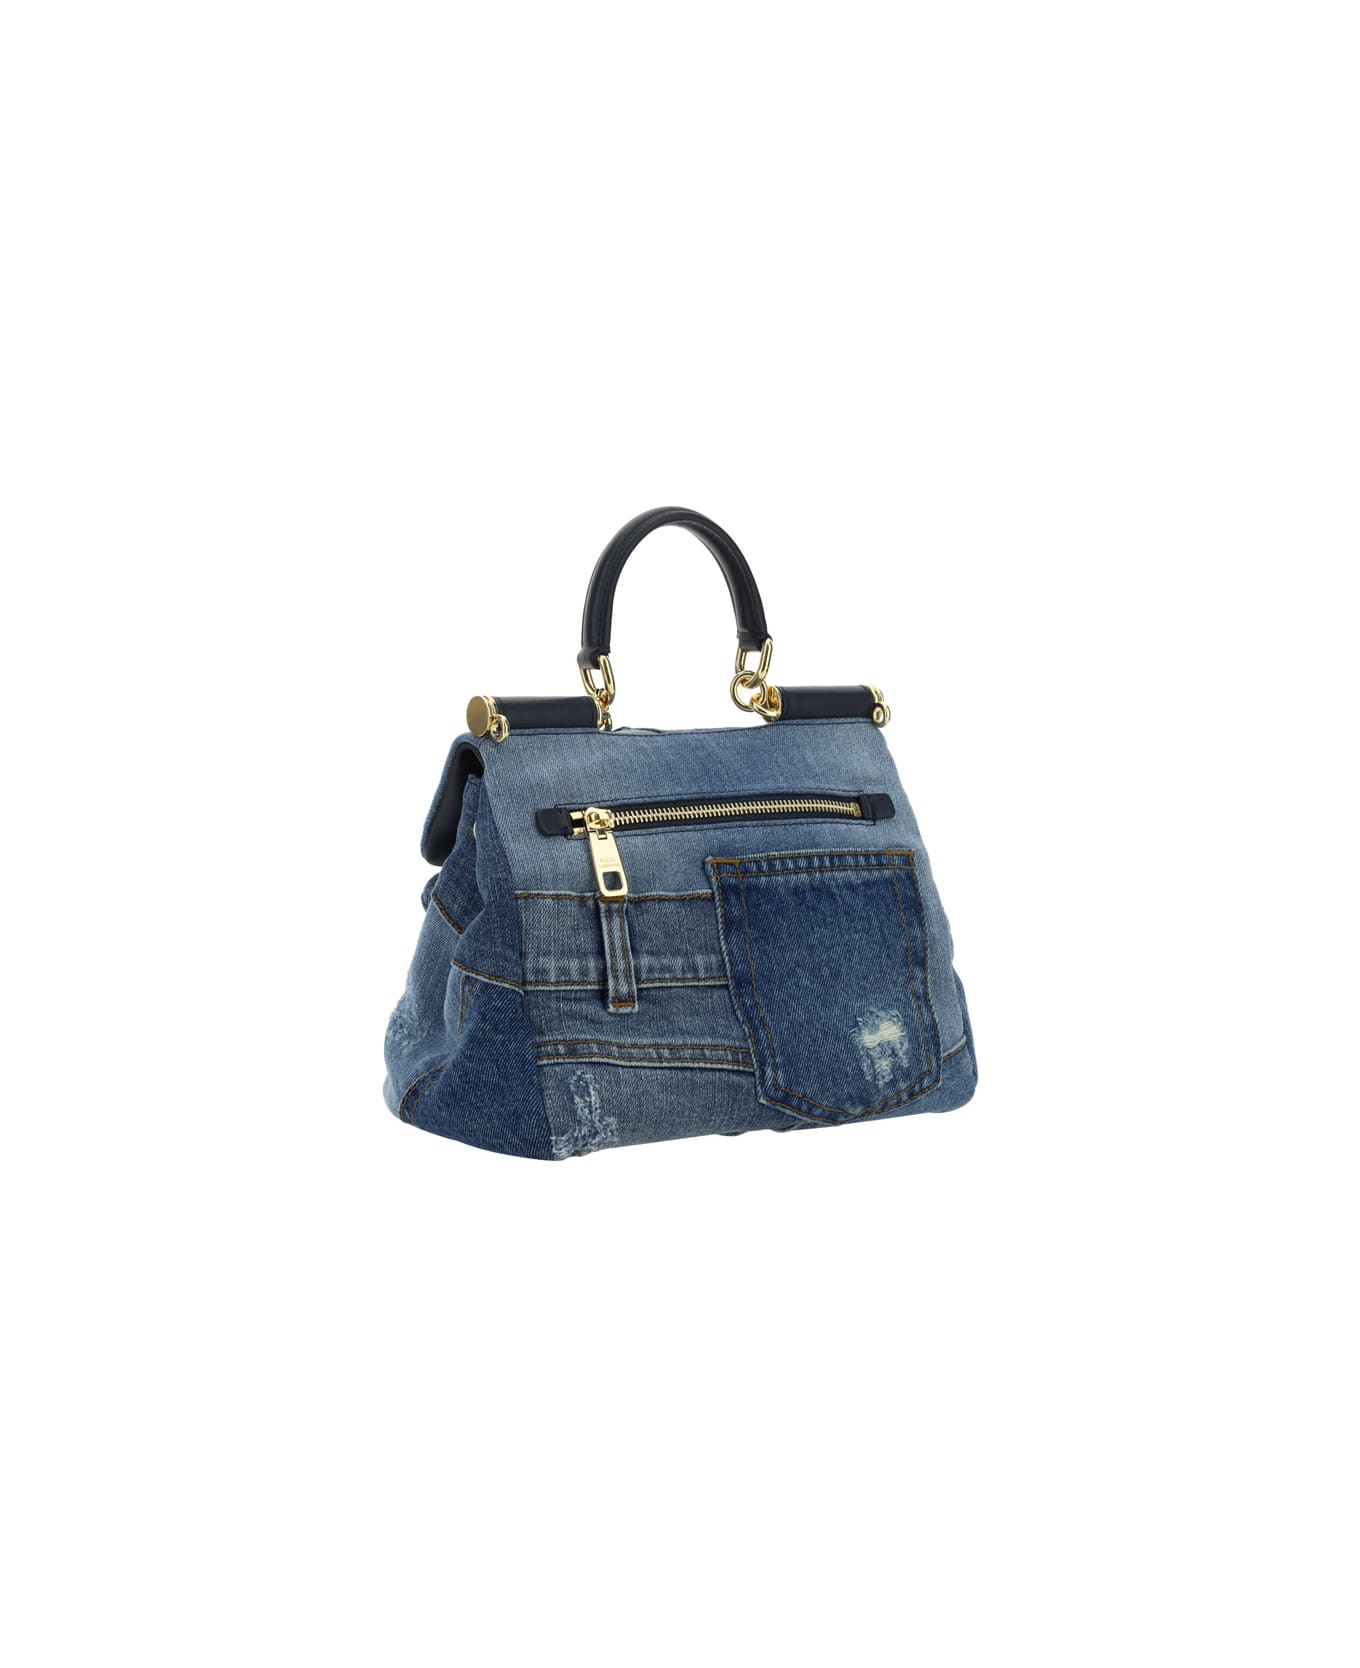 Dolce & Gabbana Denim Handbag - Denim